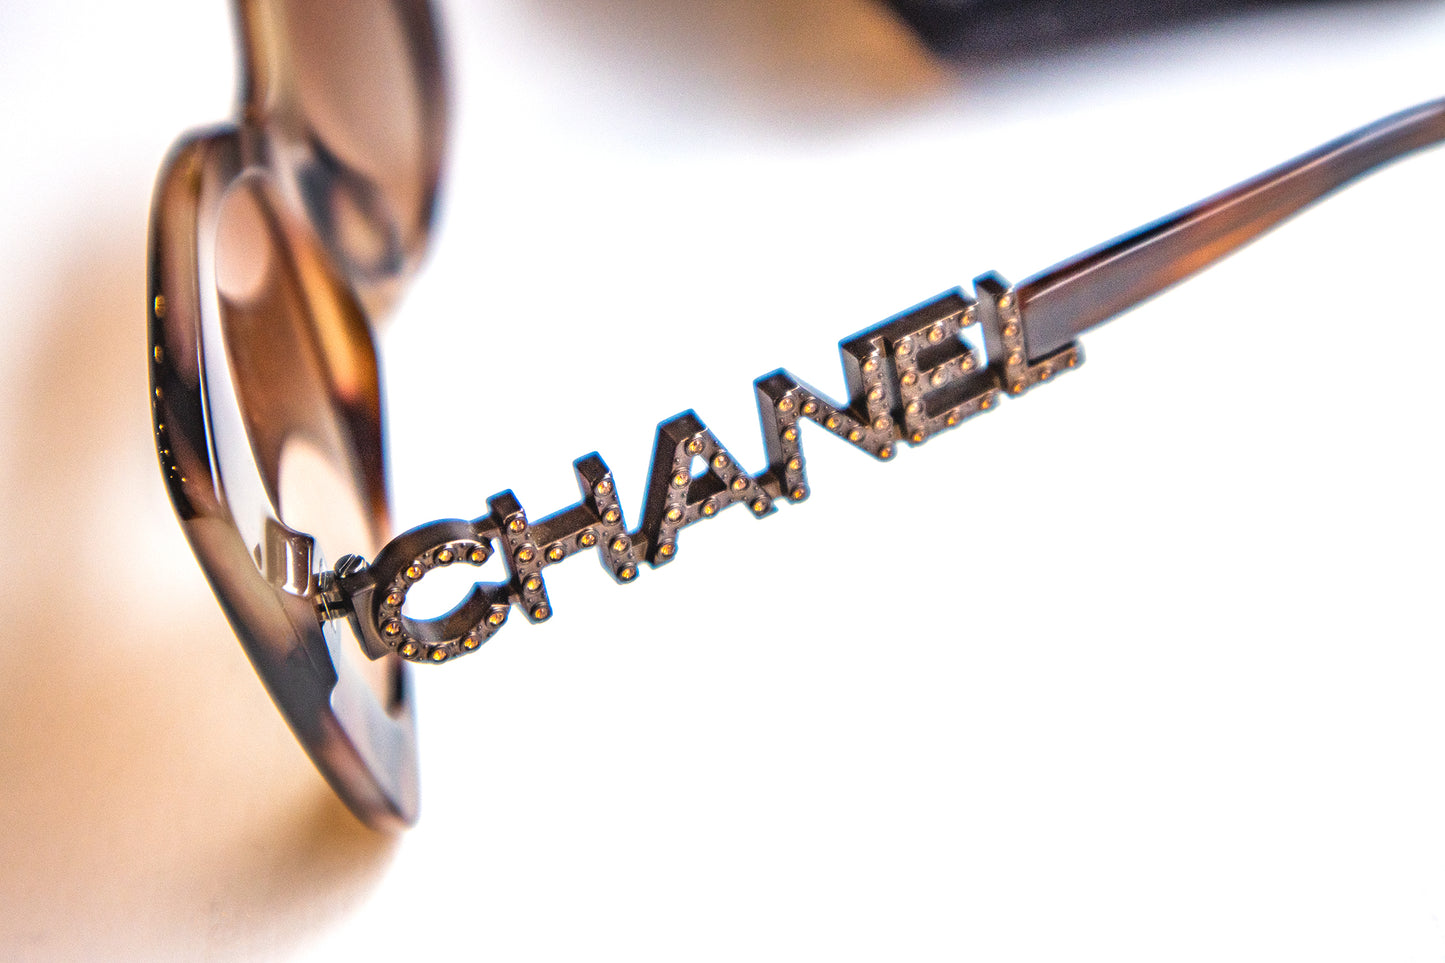 Chanel - Sonnenbrille